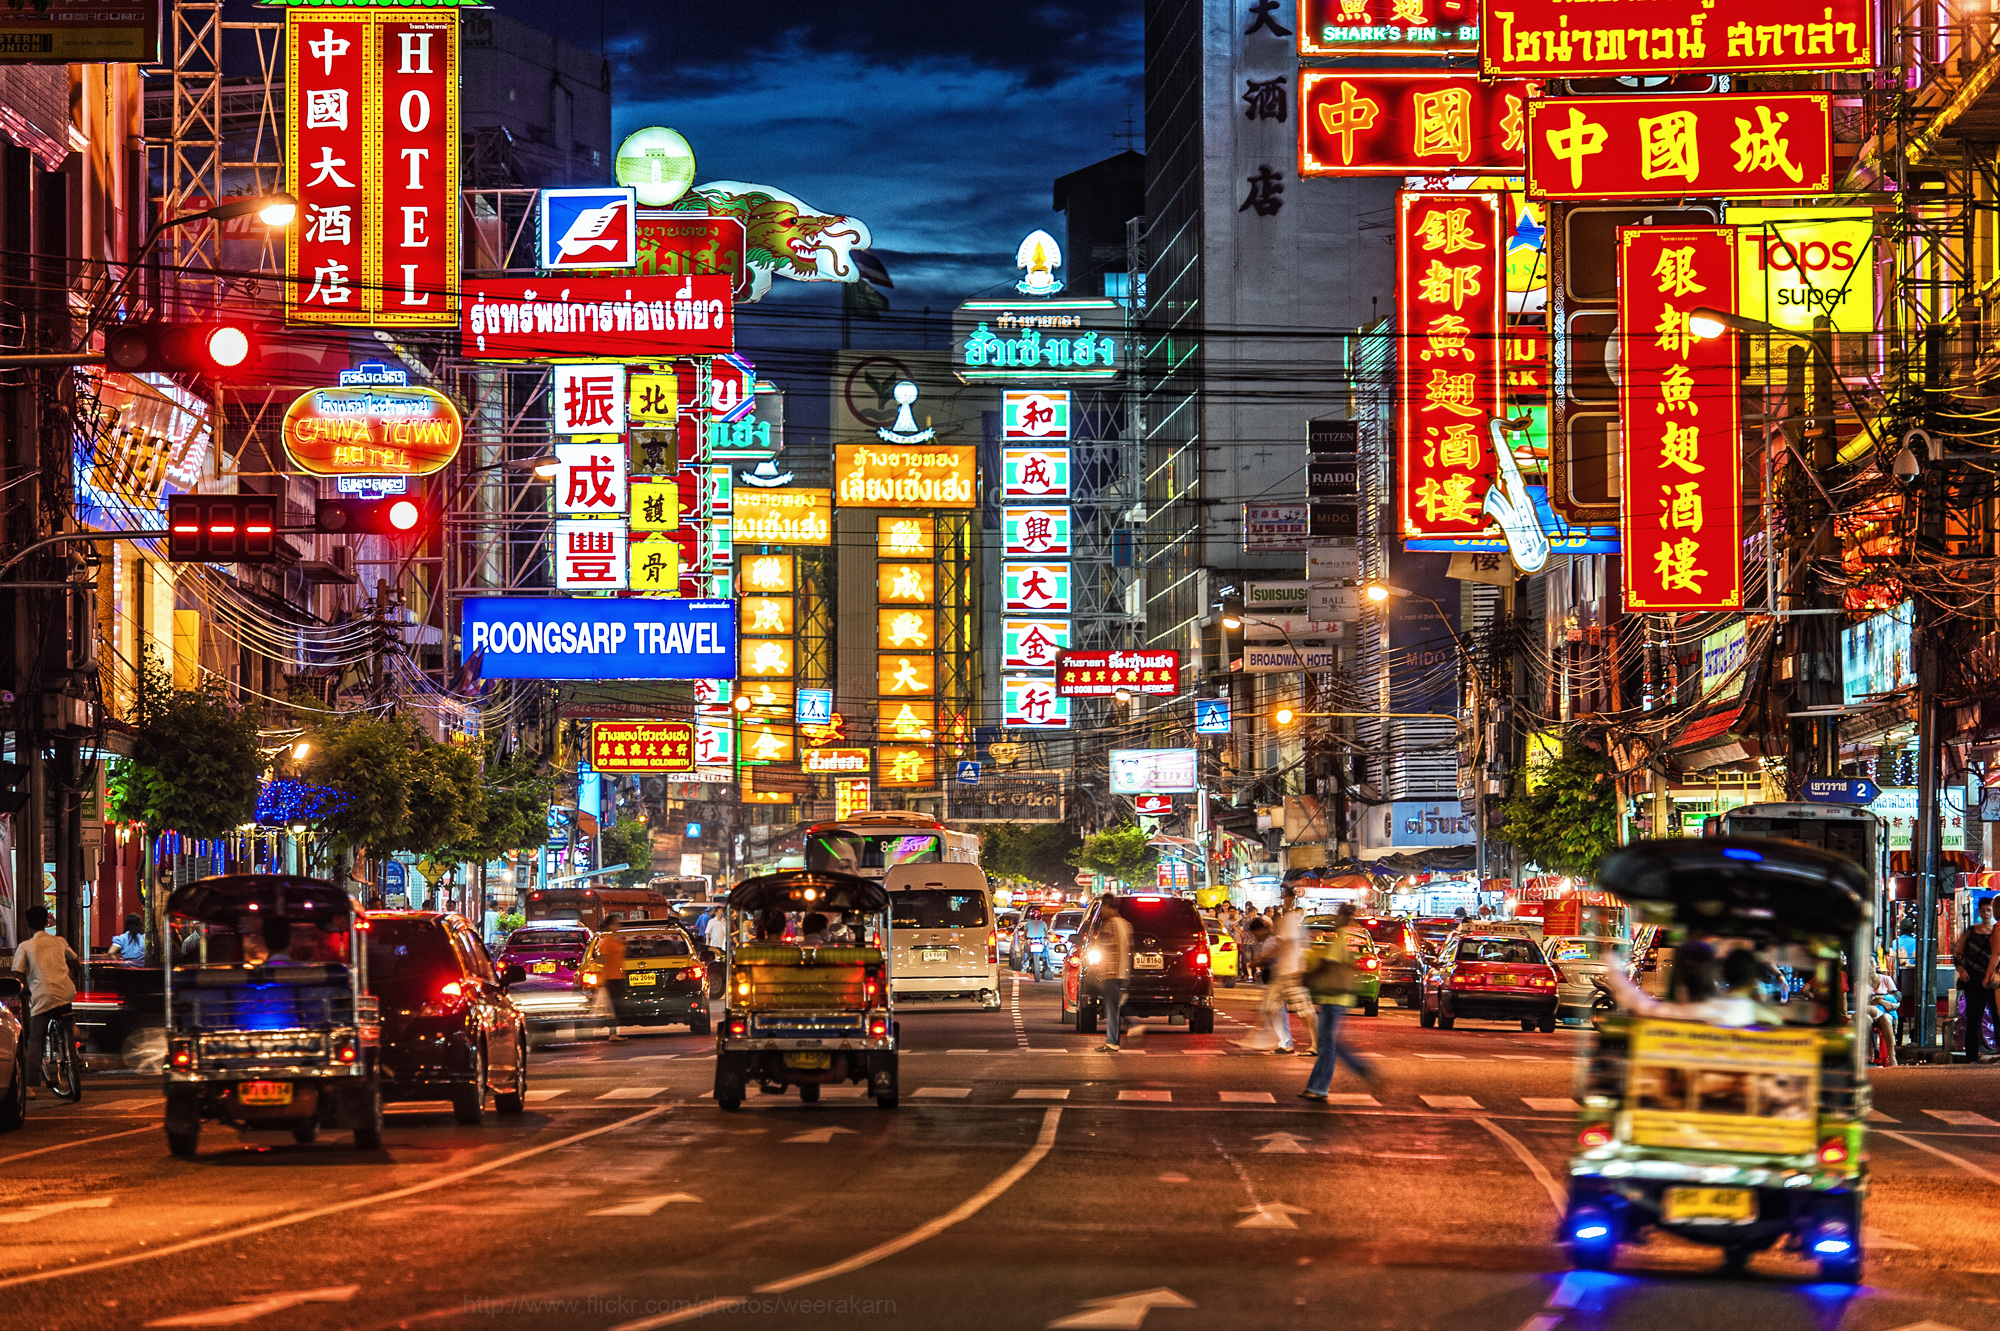 10 điểm du lịch Bangkok hot nhất Thái Lan